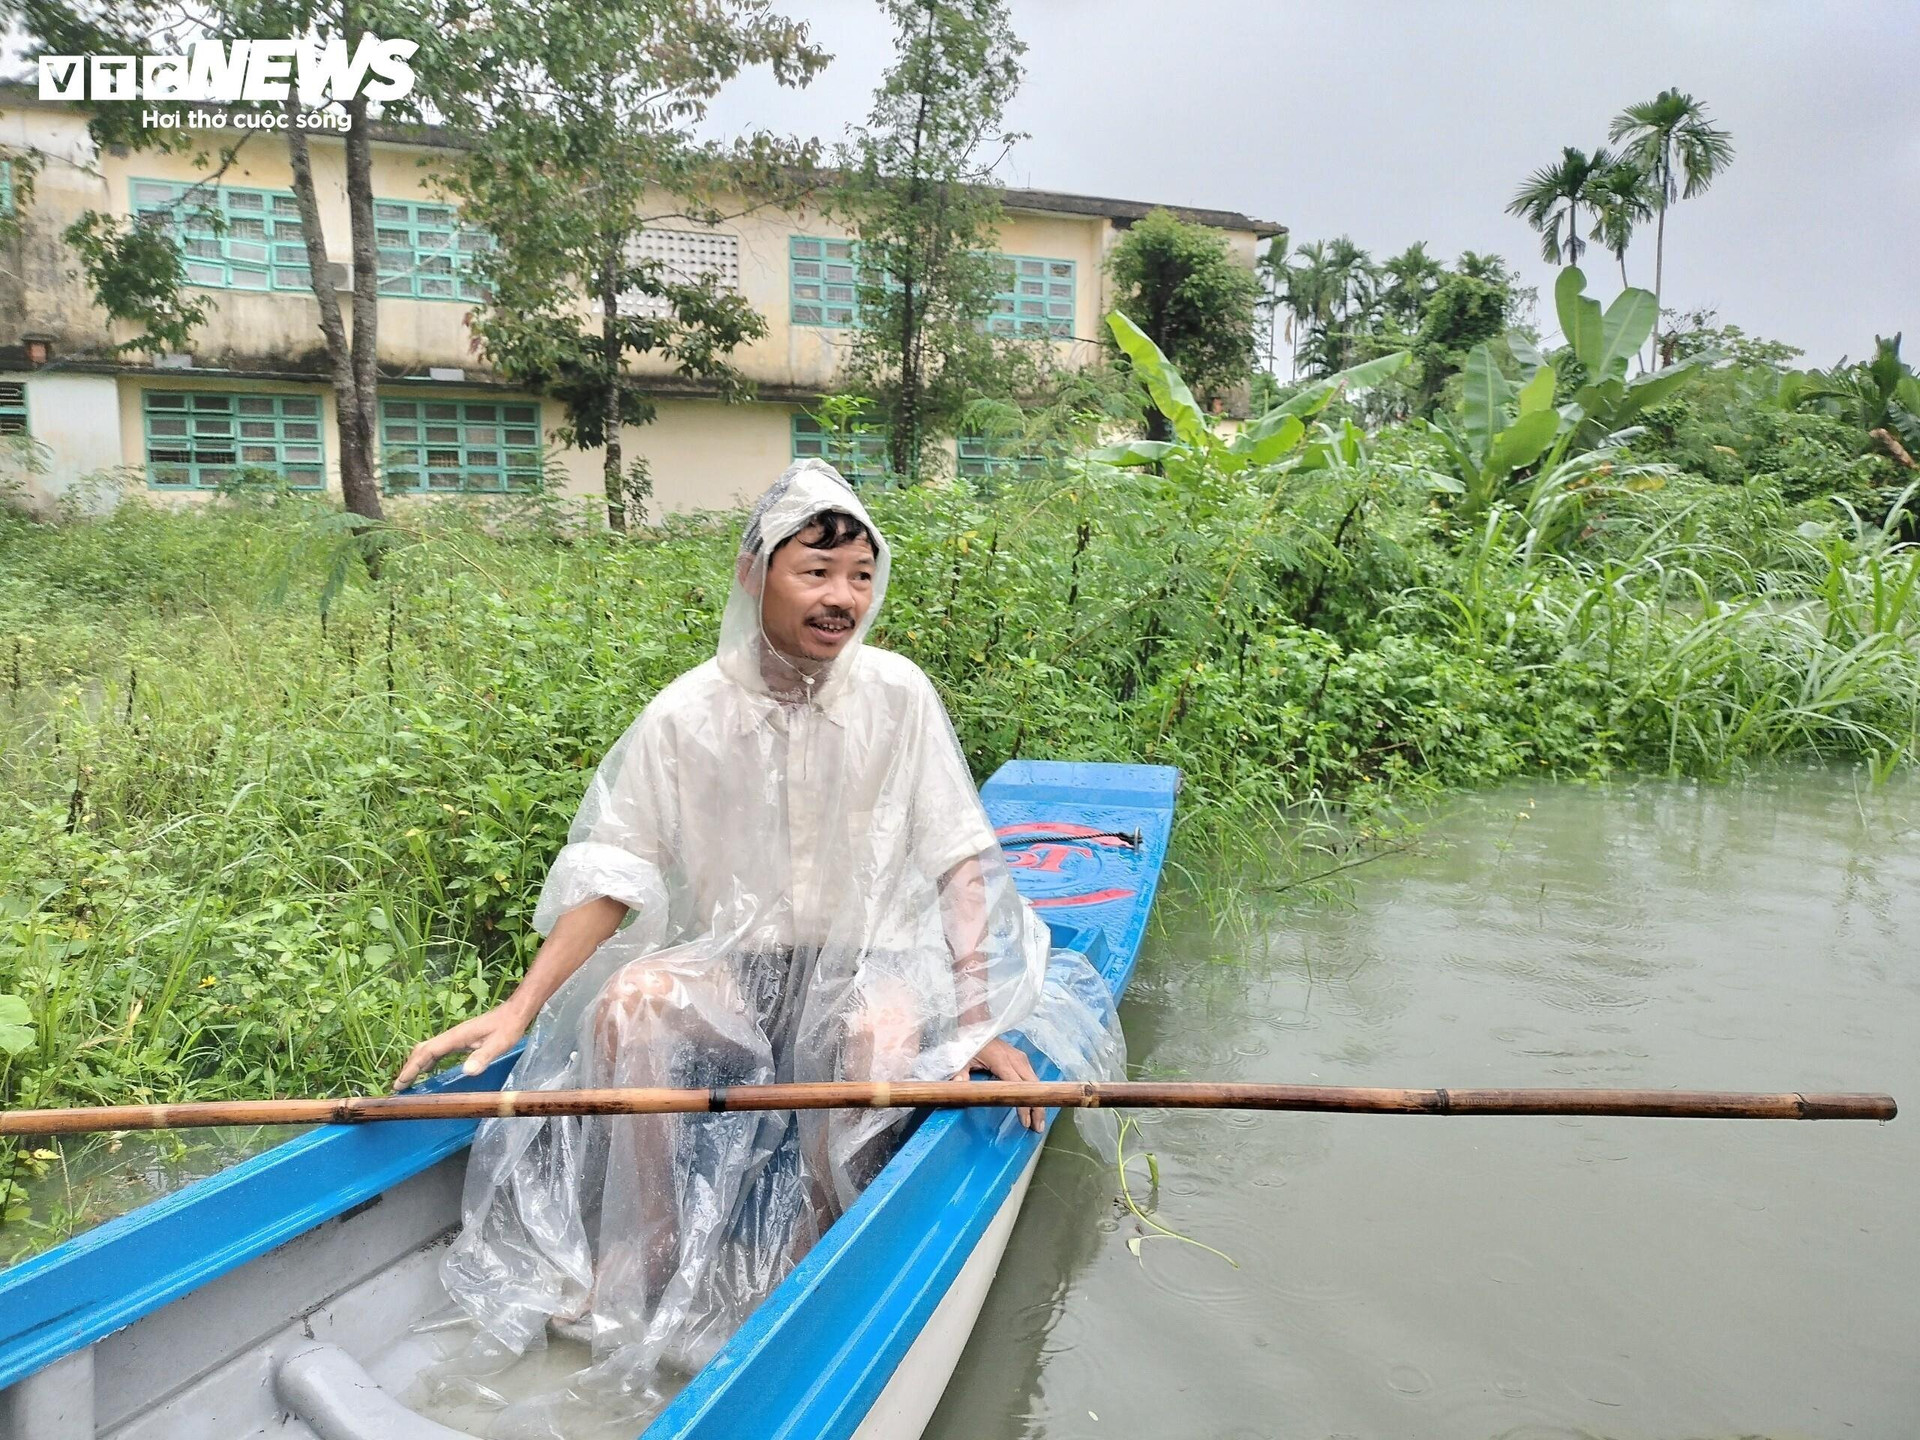 Tại TP Tam Kỳ, mưa lớn kéo dài trong 2 ngày qua khiến một số khu vực thấp trũng thuộc 2 phường Hòa Thuận, Phước Hòa ngập sâu, gây ảnh hưởng đến việc đi lại của người dân.